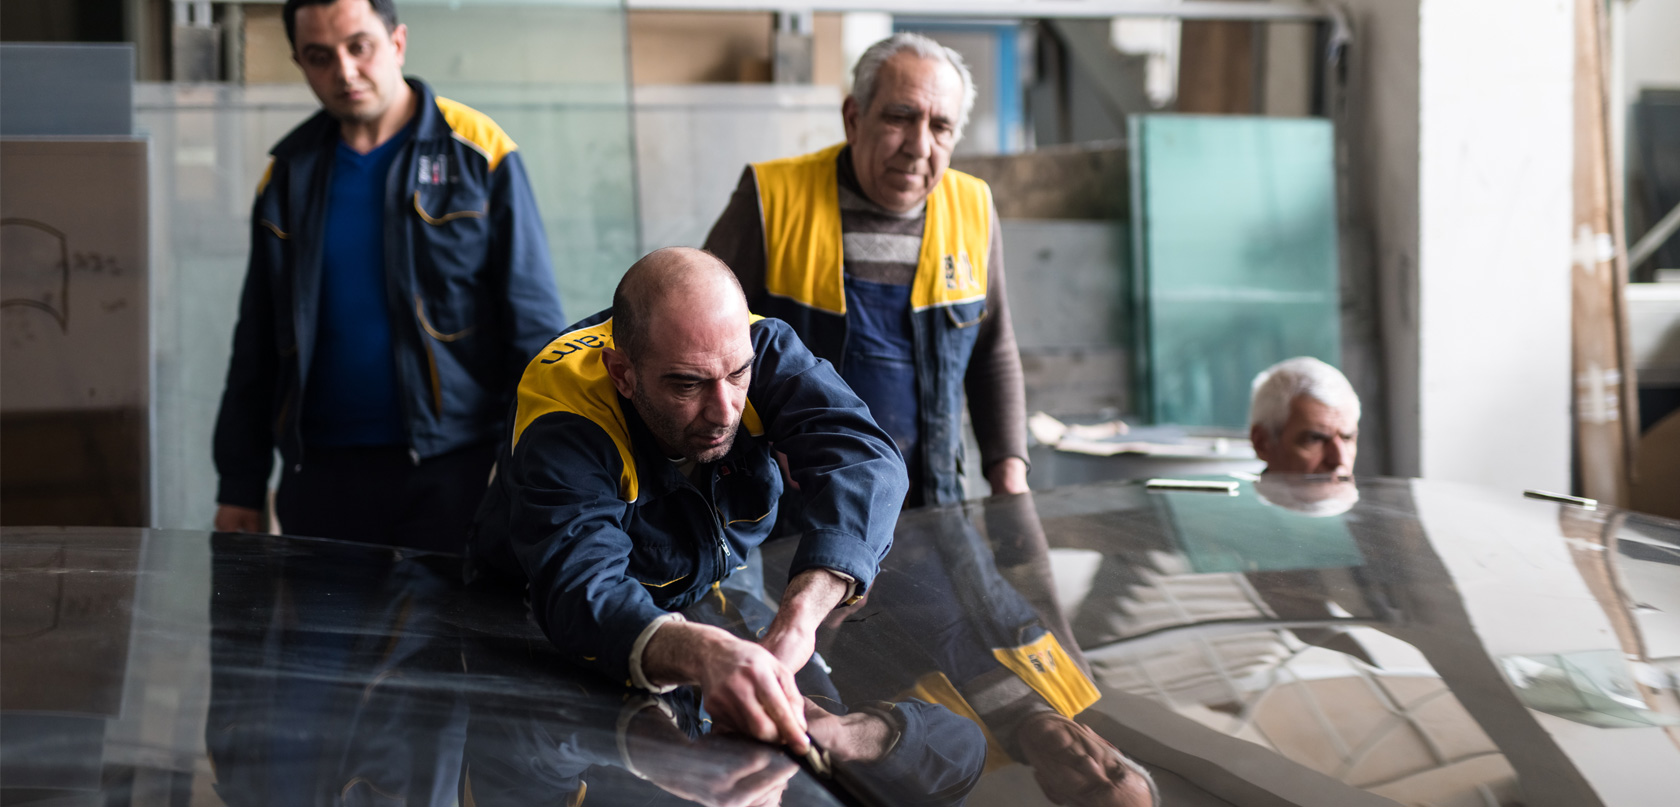  Trois hommes en veste d'uniforme jaune et bleu marine travaillent en usine. L’un d’eux se penche sur une feuille de plastique posée sur une table. 